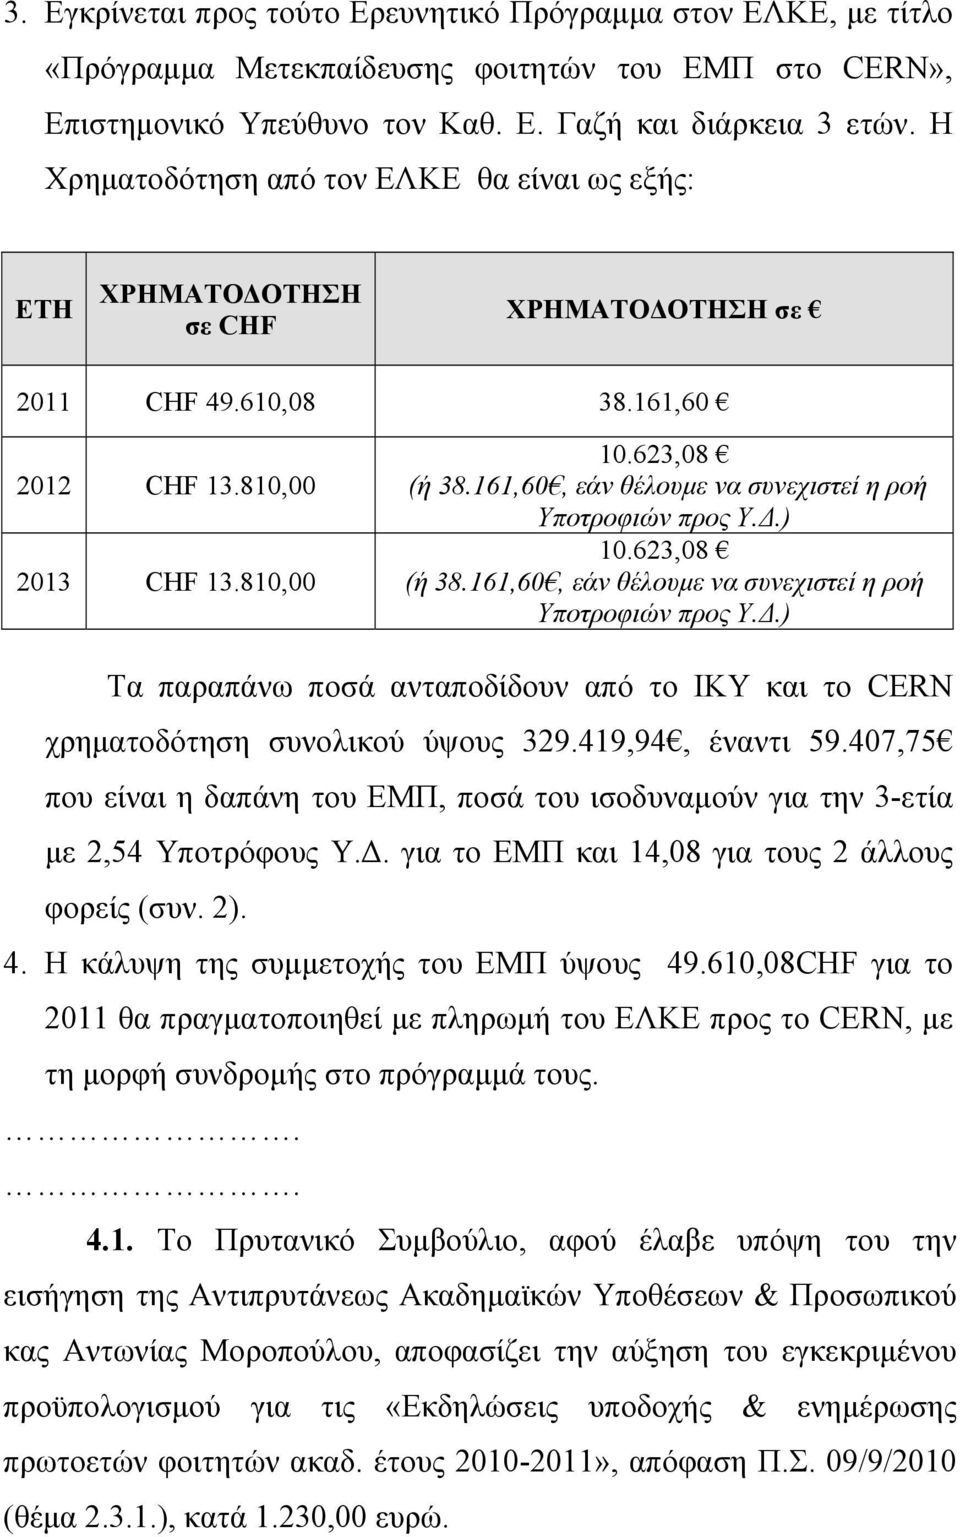 161,60, εάν θέλουμε να συνεχιστεί η ροή Υποτροφιών προς Υ.Δ.) 10.623,08 (ή 38.161,60, εάν θέλουμε να συνεχιστεί η ροή Υποτροφιών προς Υ.Δ.) Τα παραπάνω ποσά ανταποδίδουν από το ΙΚΥ και το CERN χρηματοδότηση συνολικού ύψους 329.